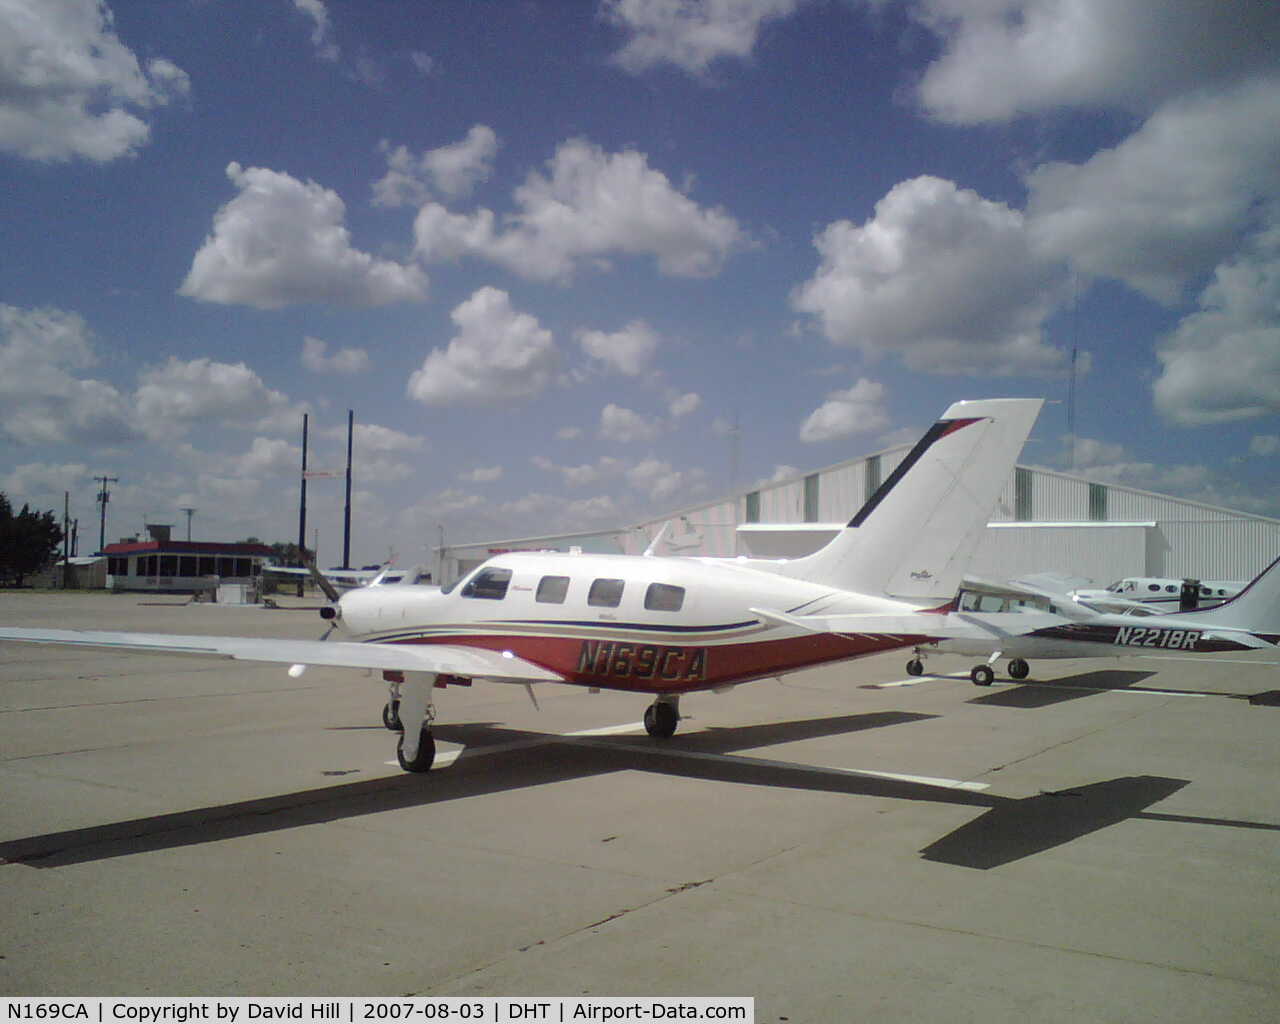 N169CA, 2007 Piper PA-46-500TP C/N 4697300, N169CA at Dalhart